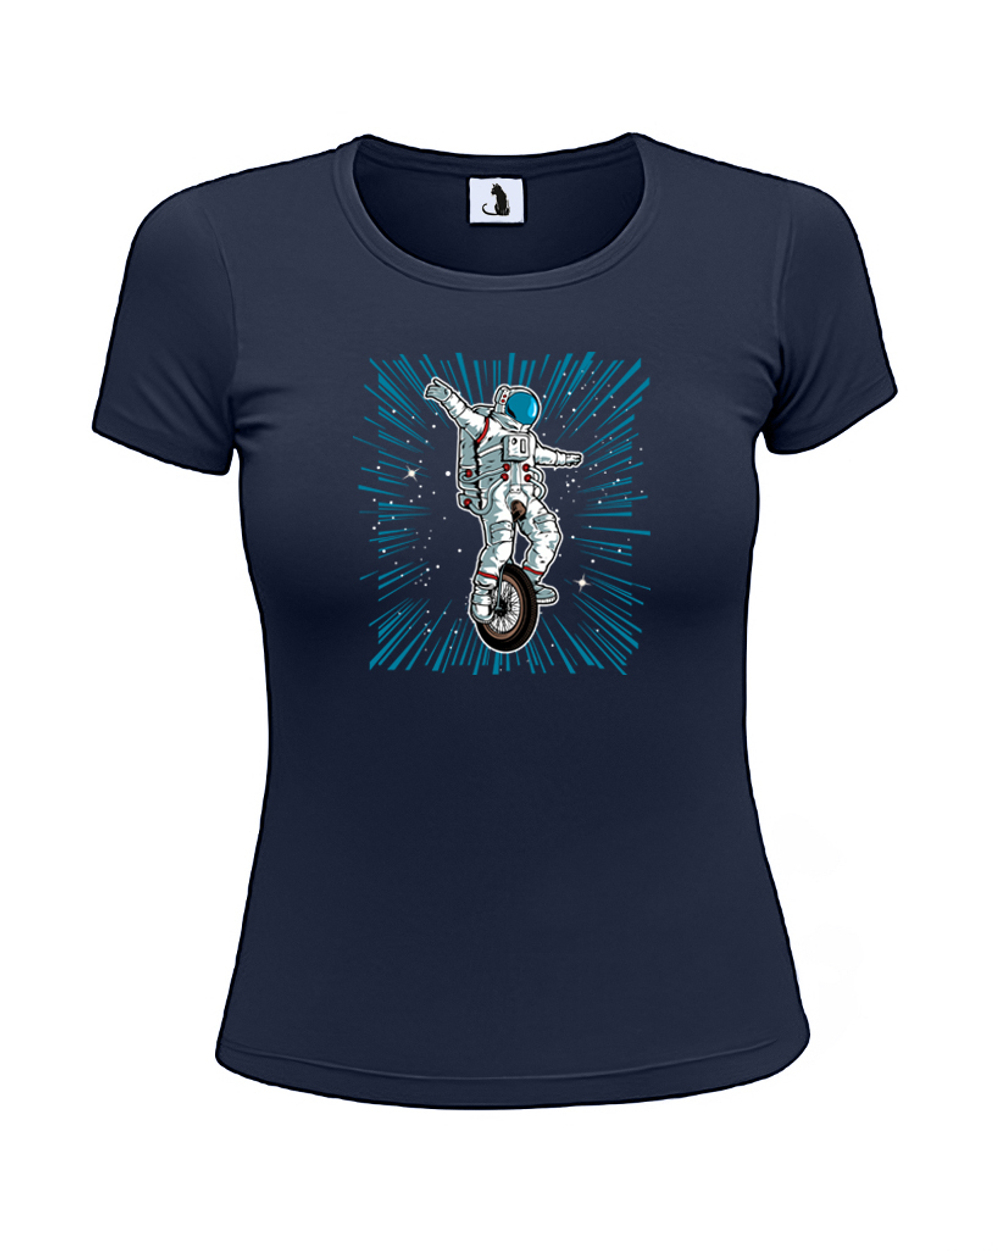 Футболка Астронавт на моноцикле женская приталенная темно-синяя